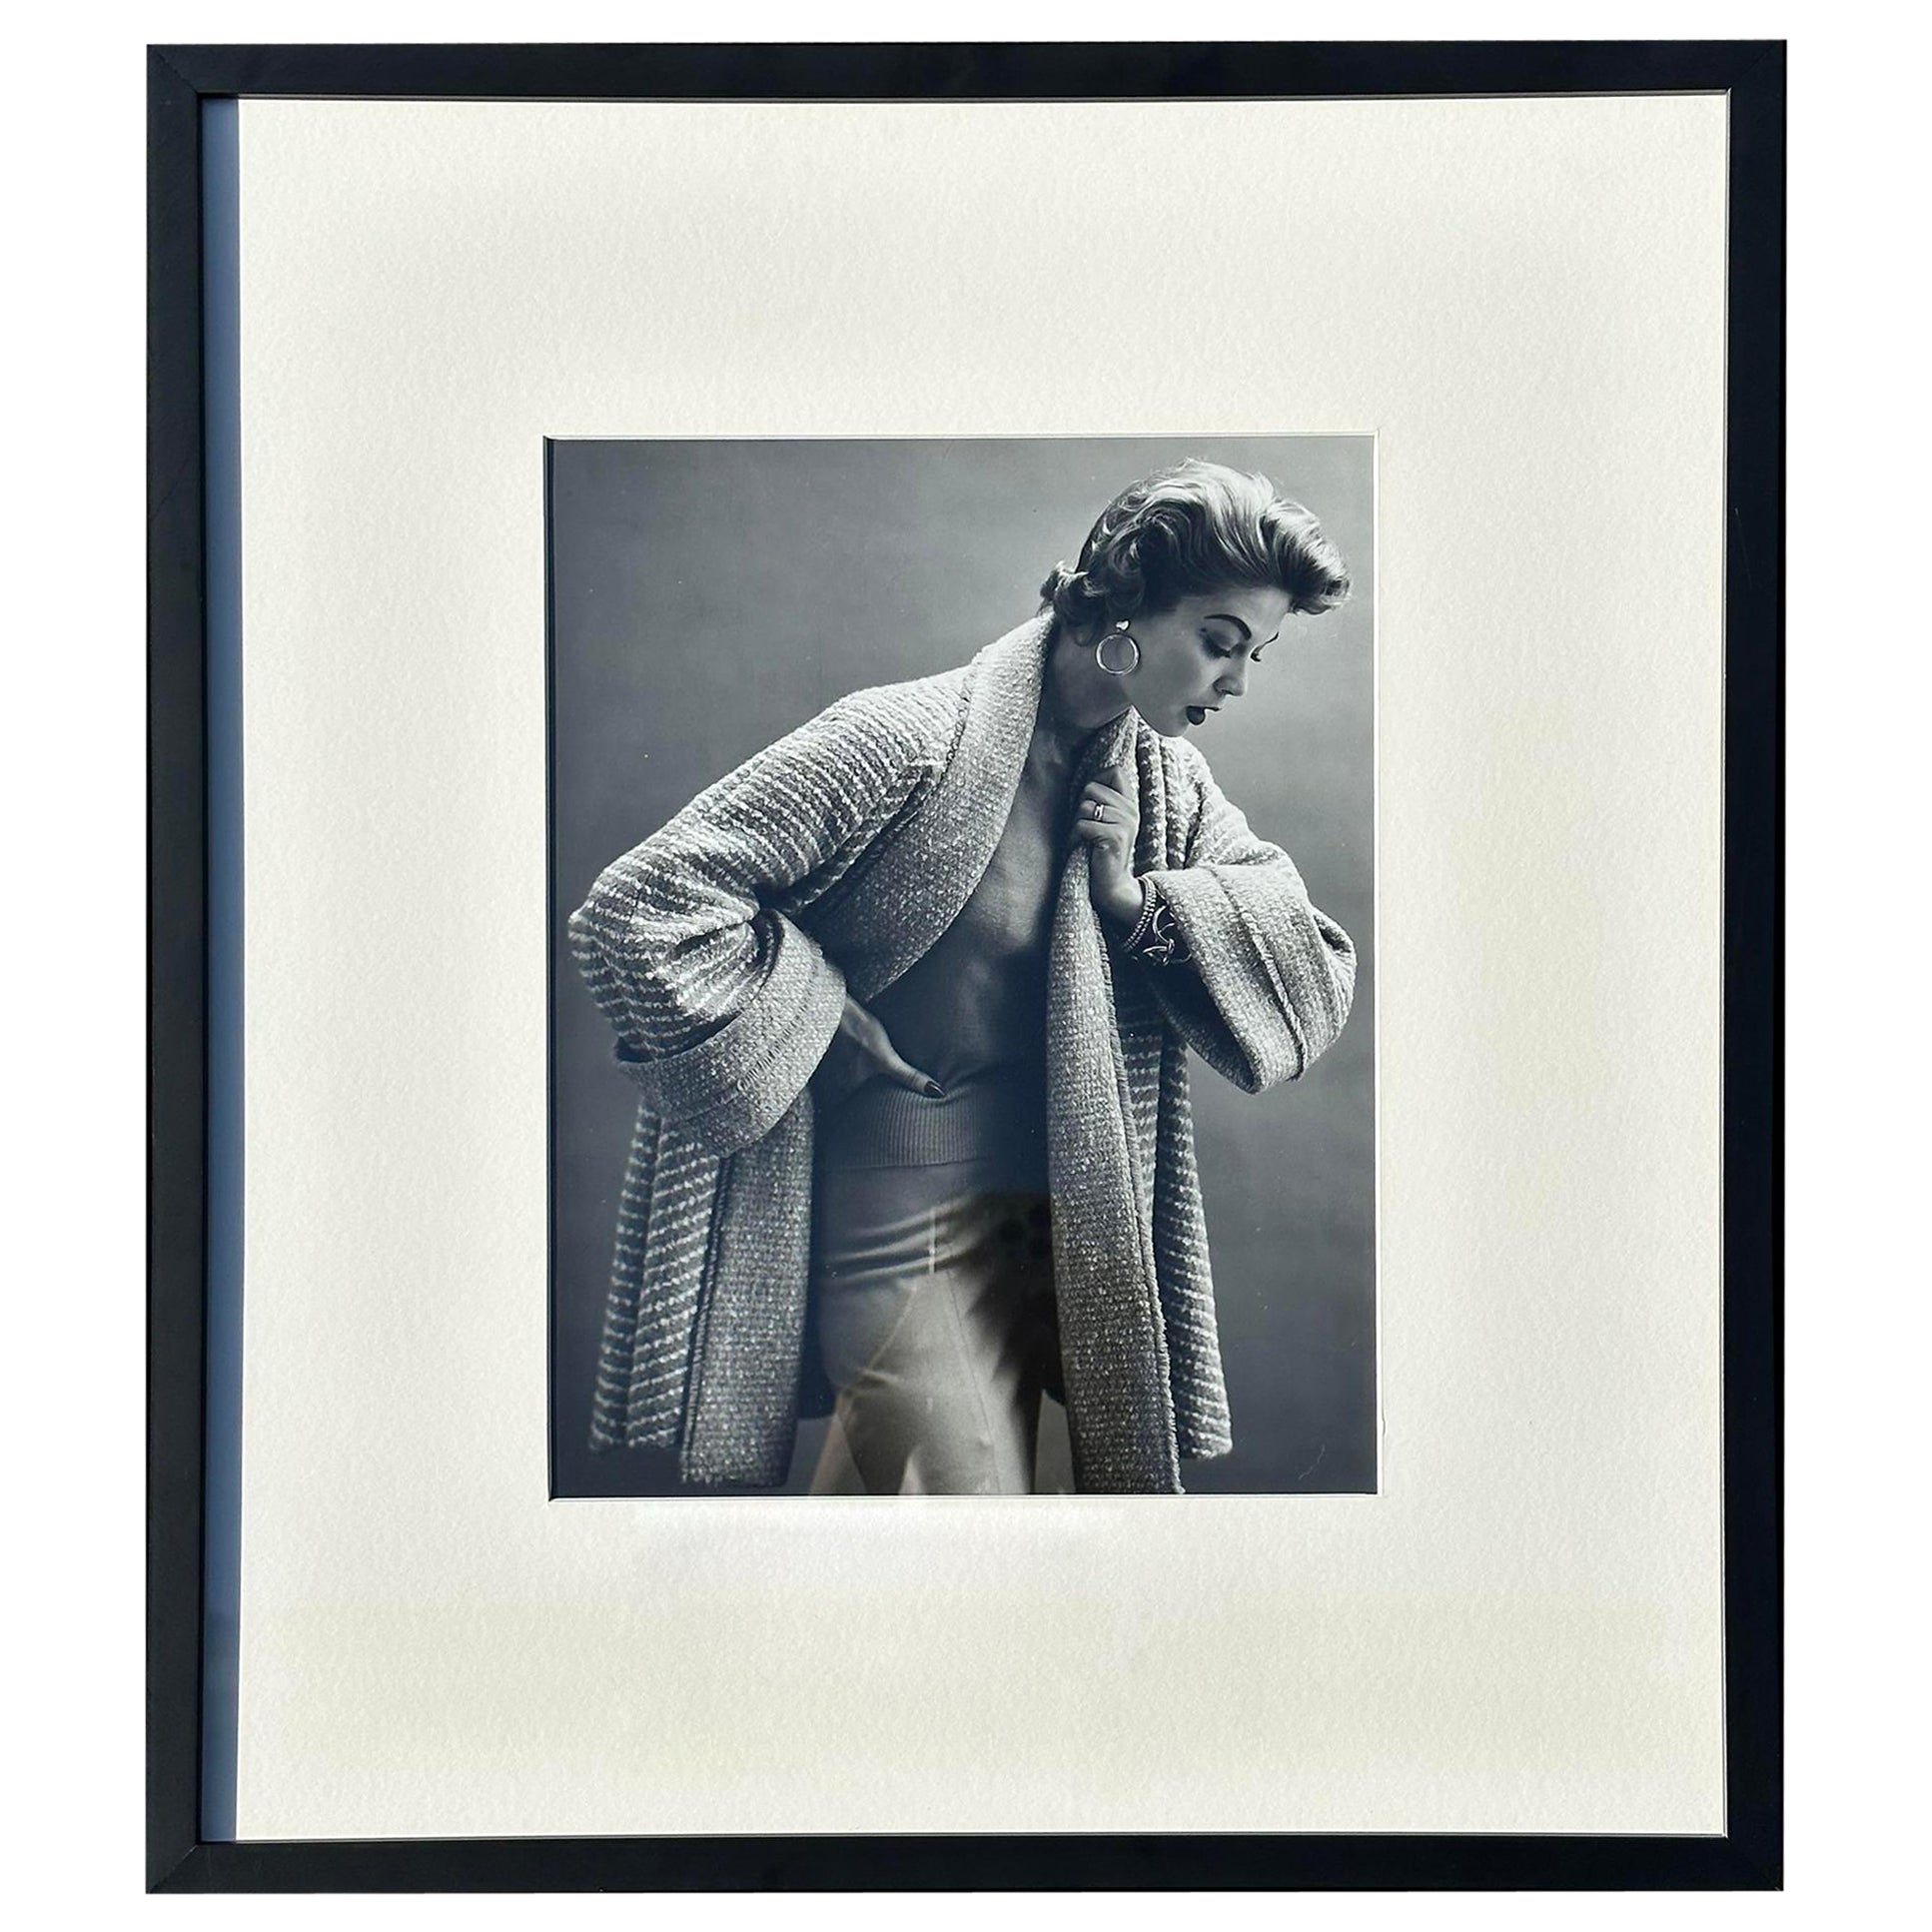 Schwarz-Weiß-Mode-Fotografie von 1950, gerahmt